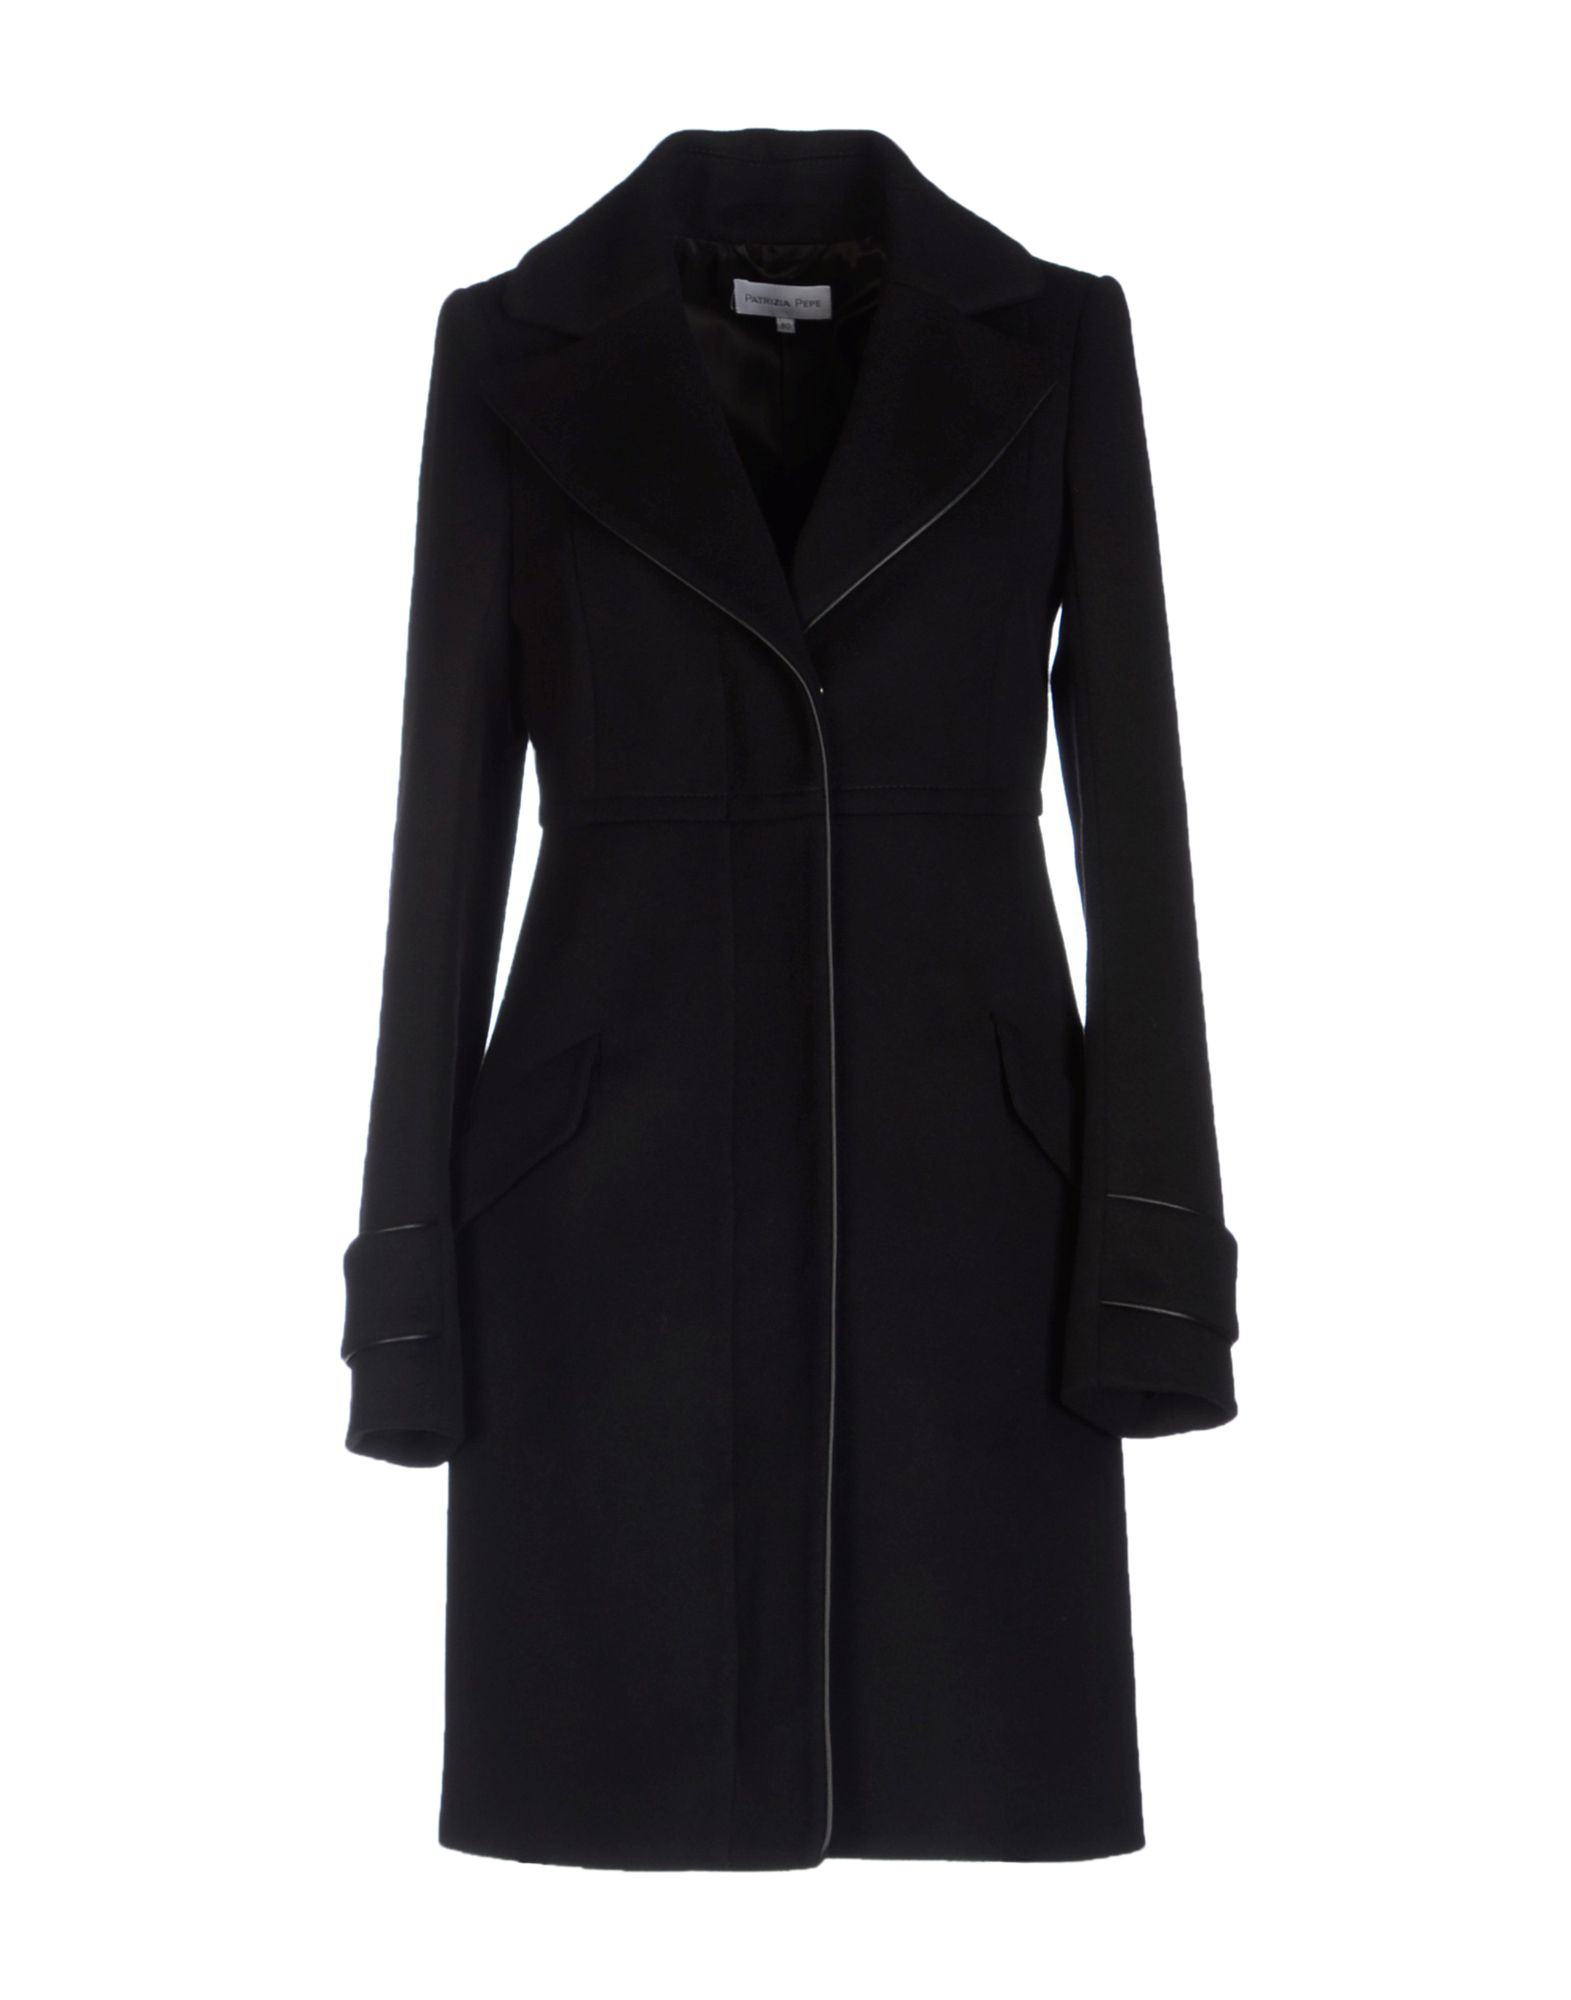 Patrizia pepe Coat in Black | Lyst